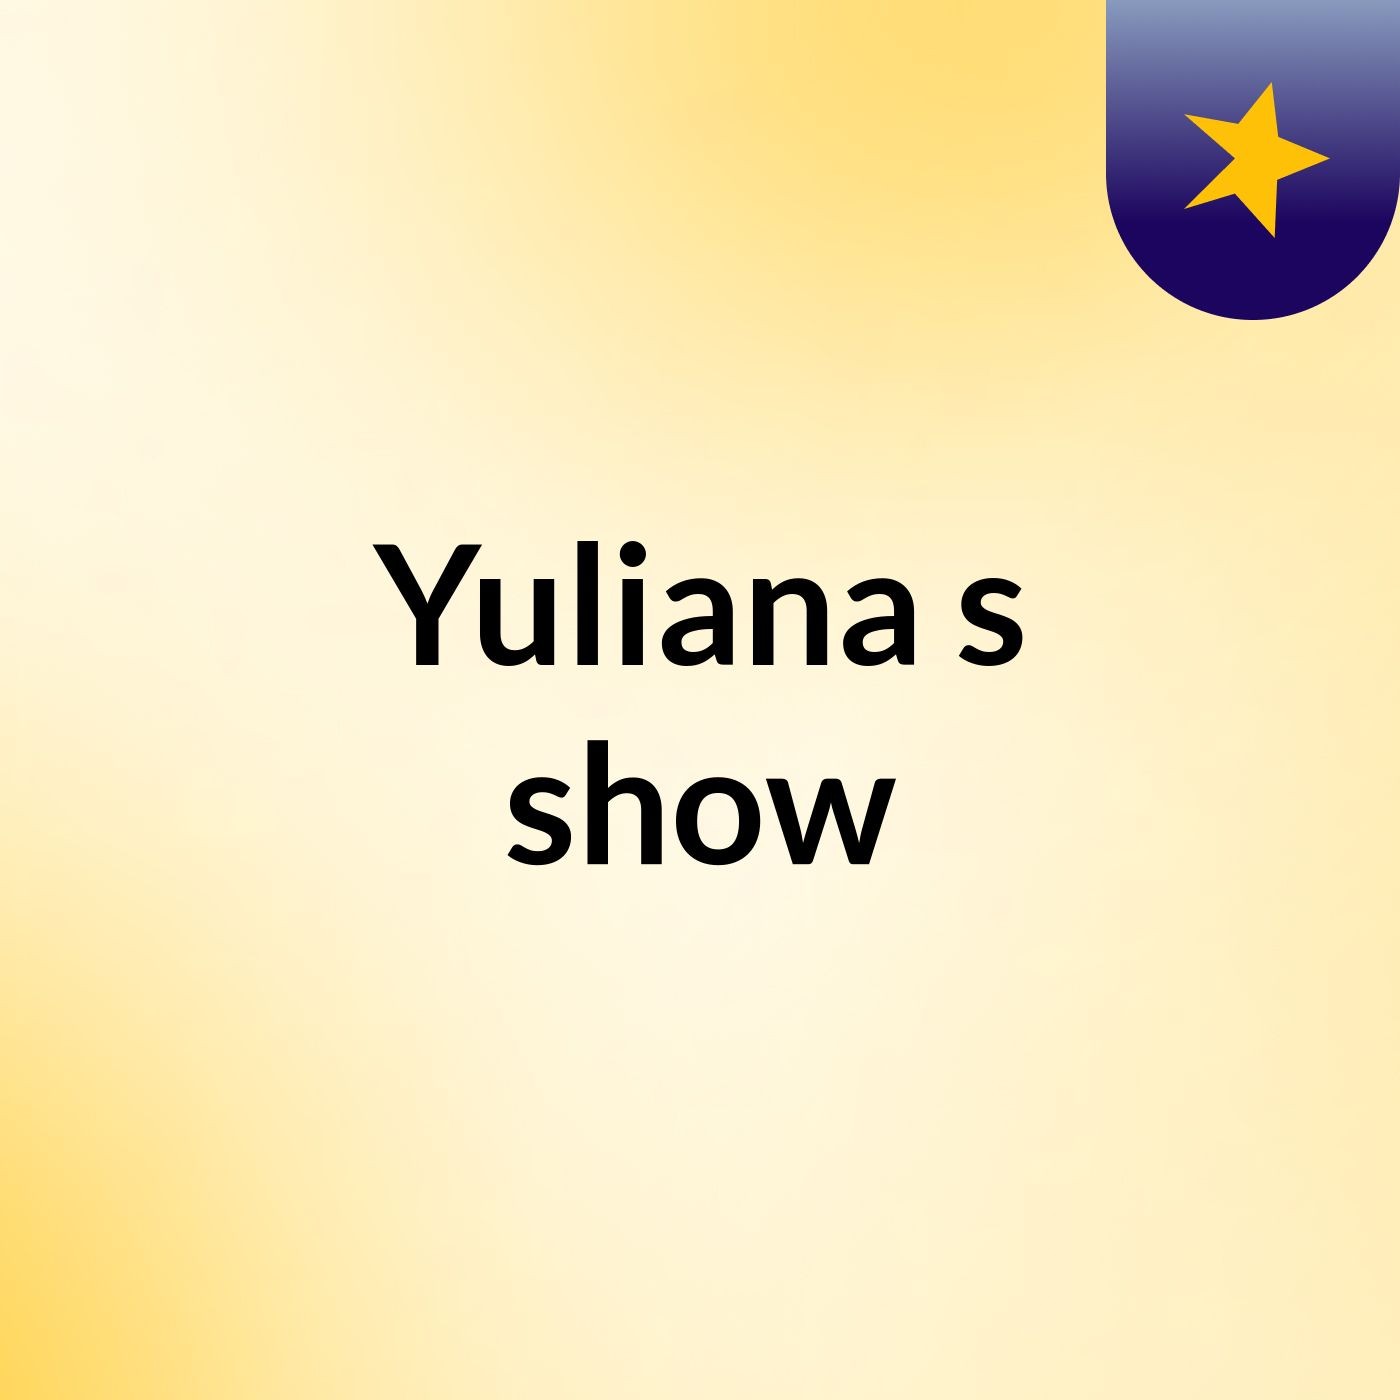 Yuliana's show